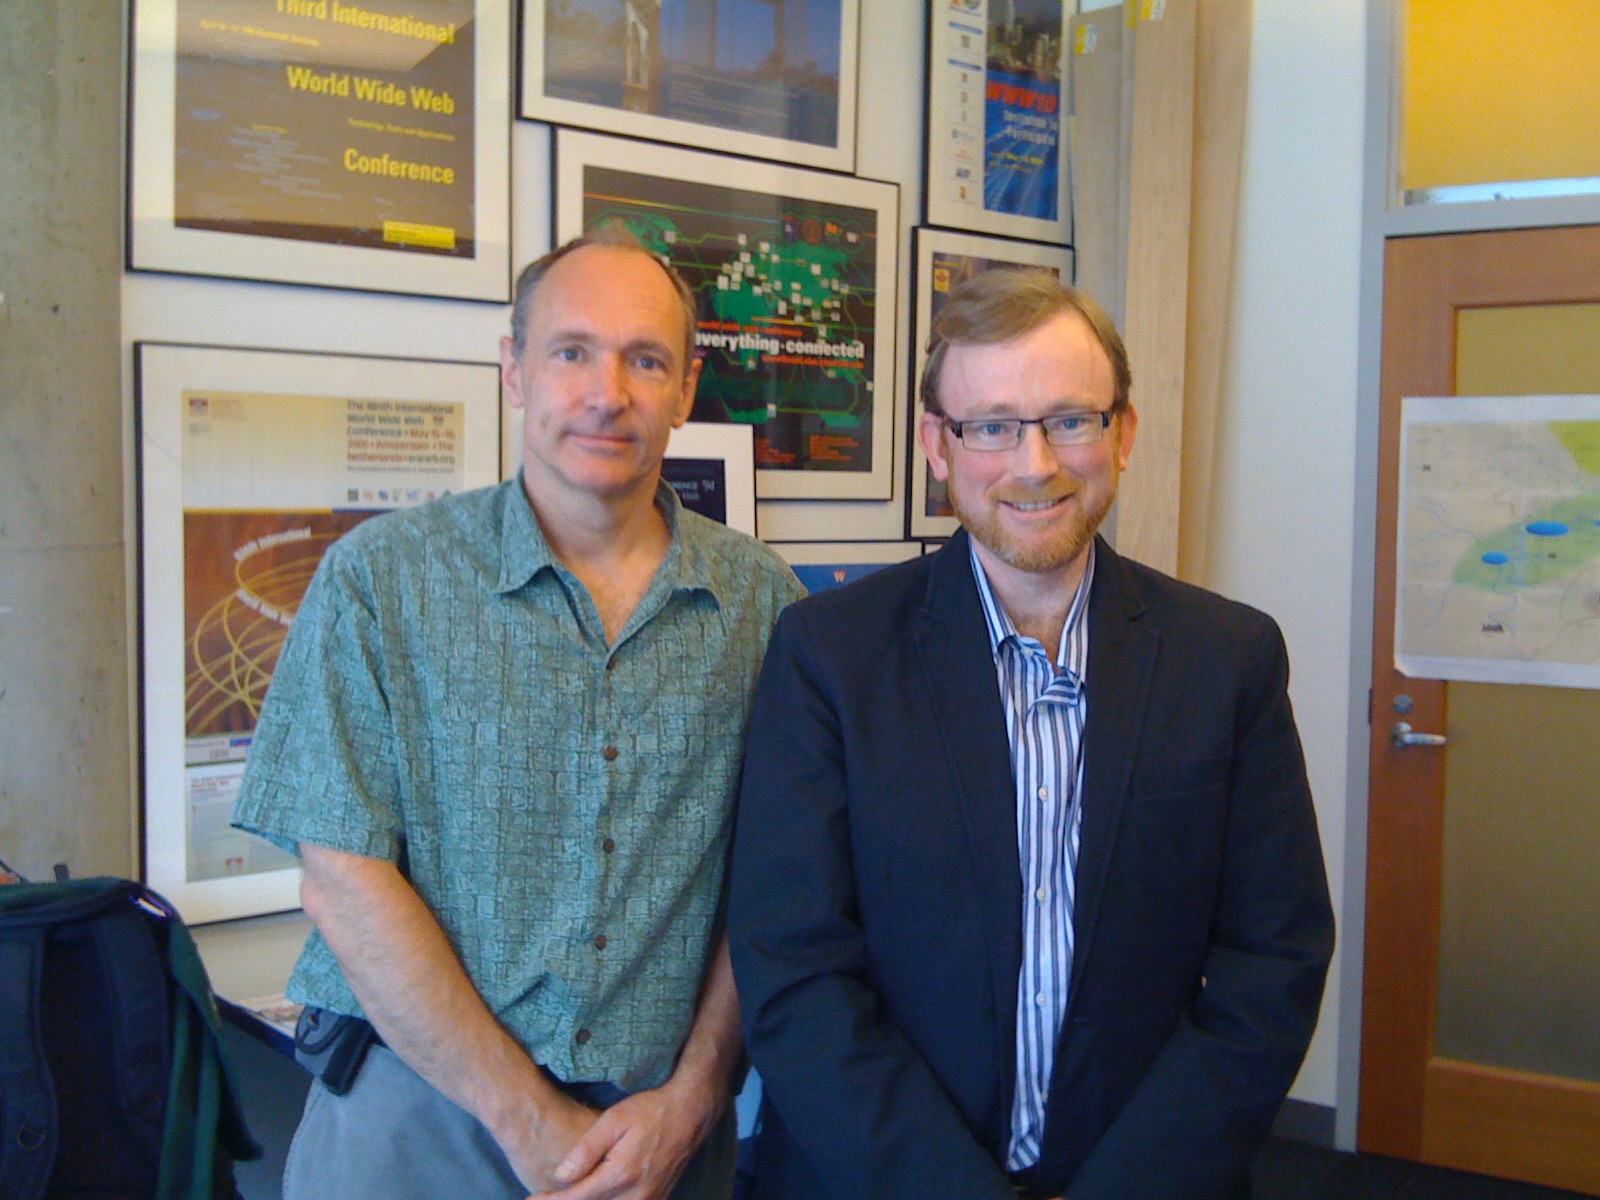 Meeting My Hero, Tim Berners-Lee, at W3C Headquarters